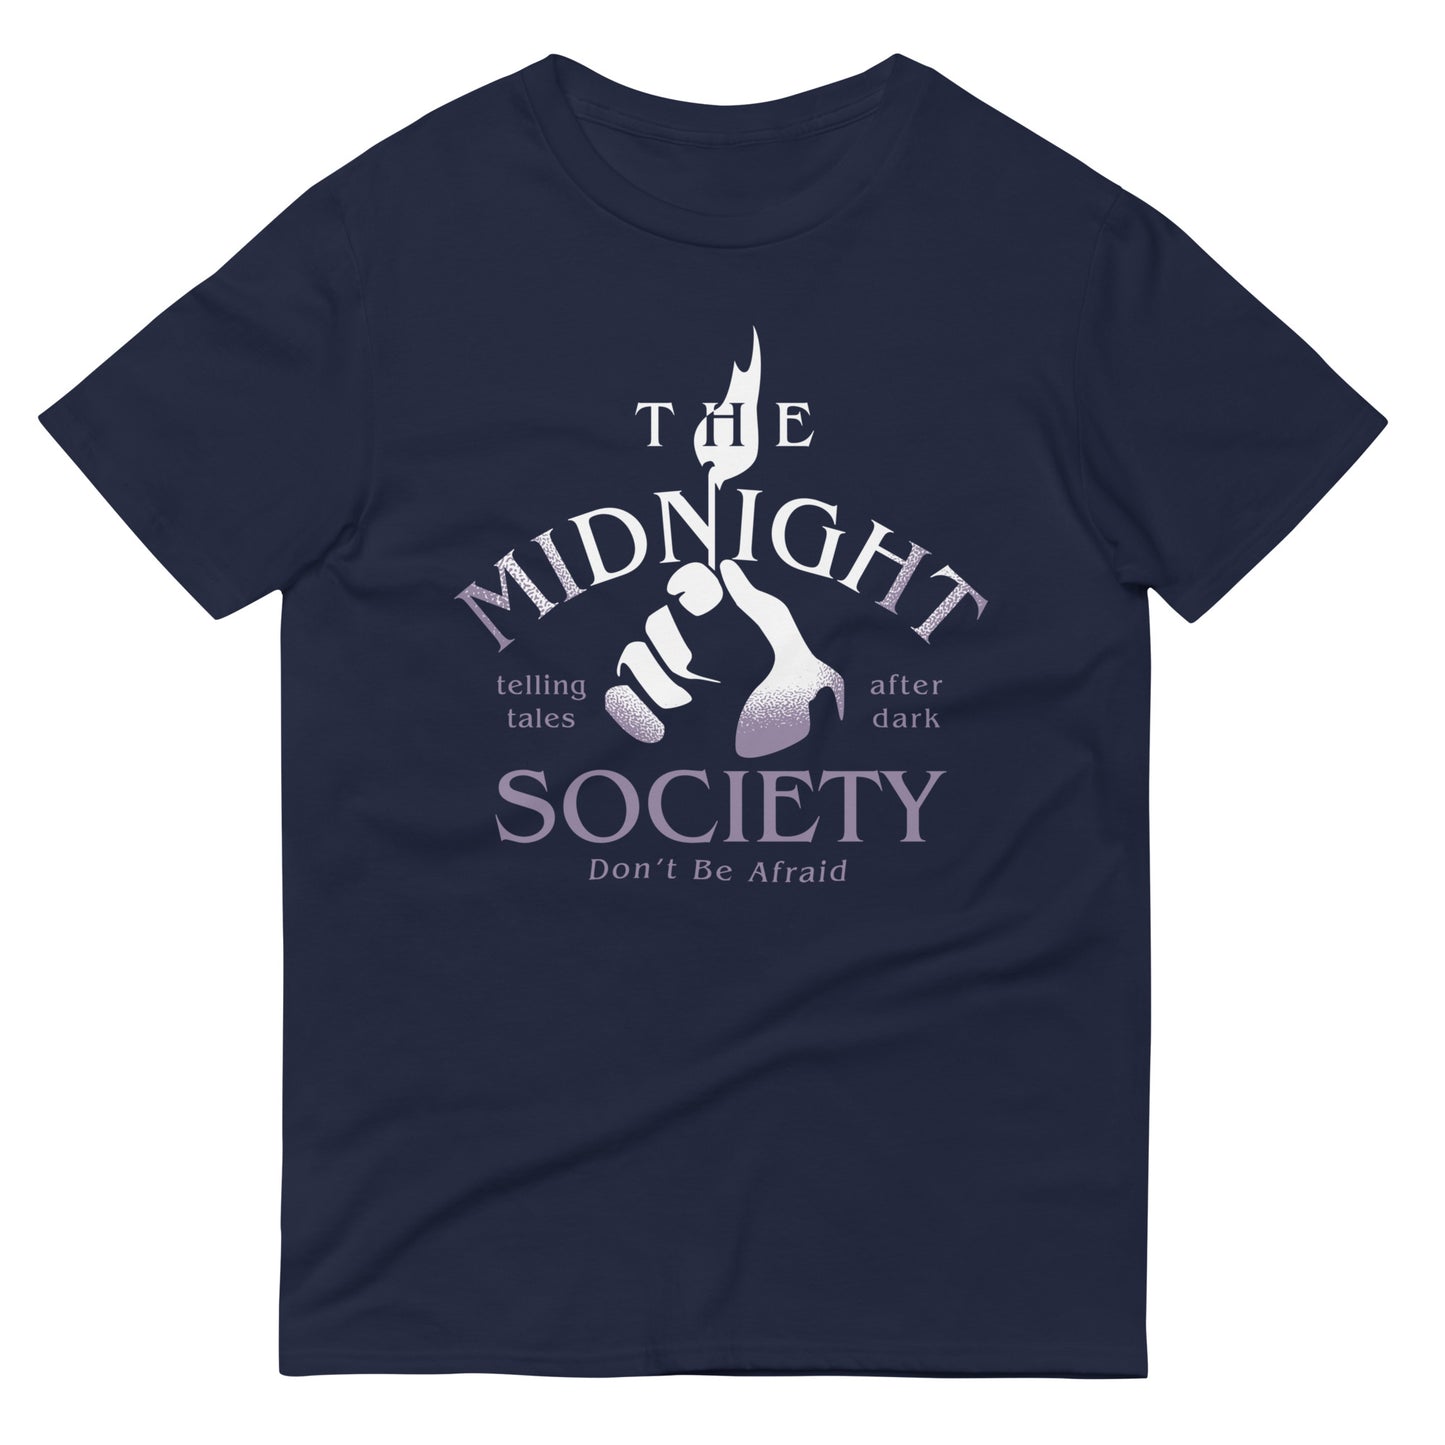 The Midnight Society Men's Signature Tee